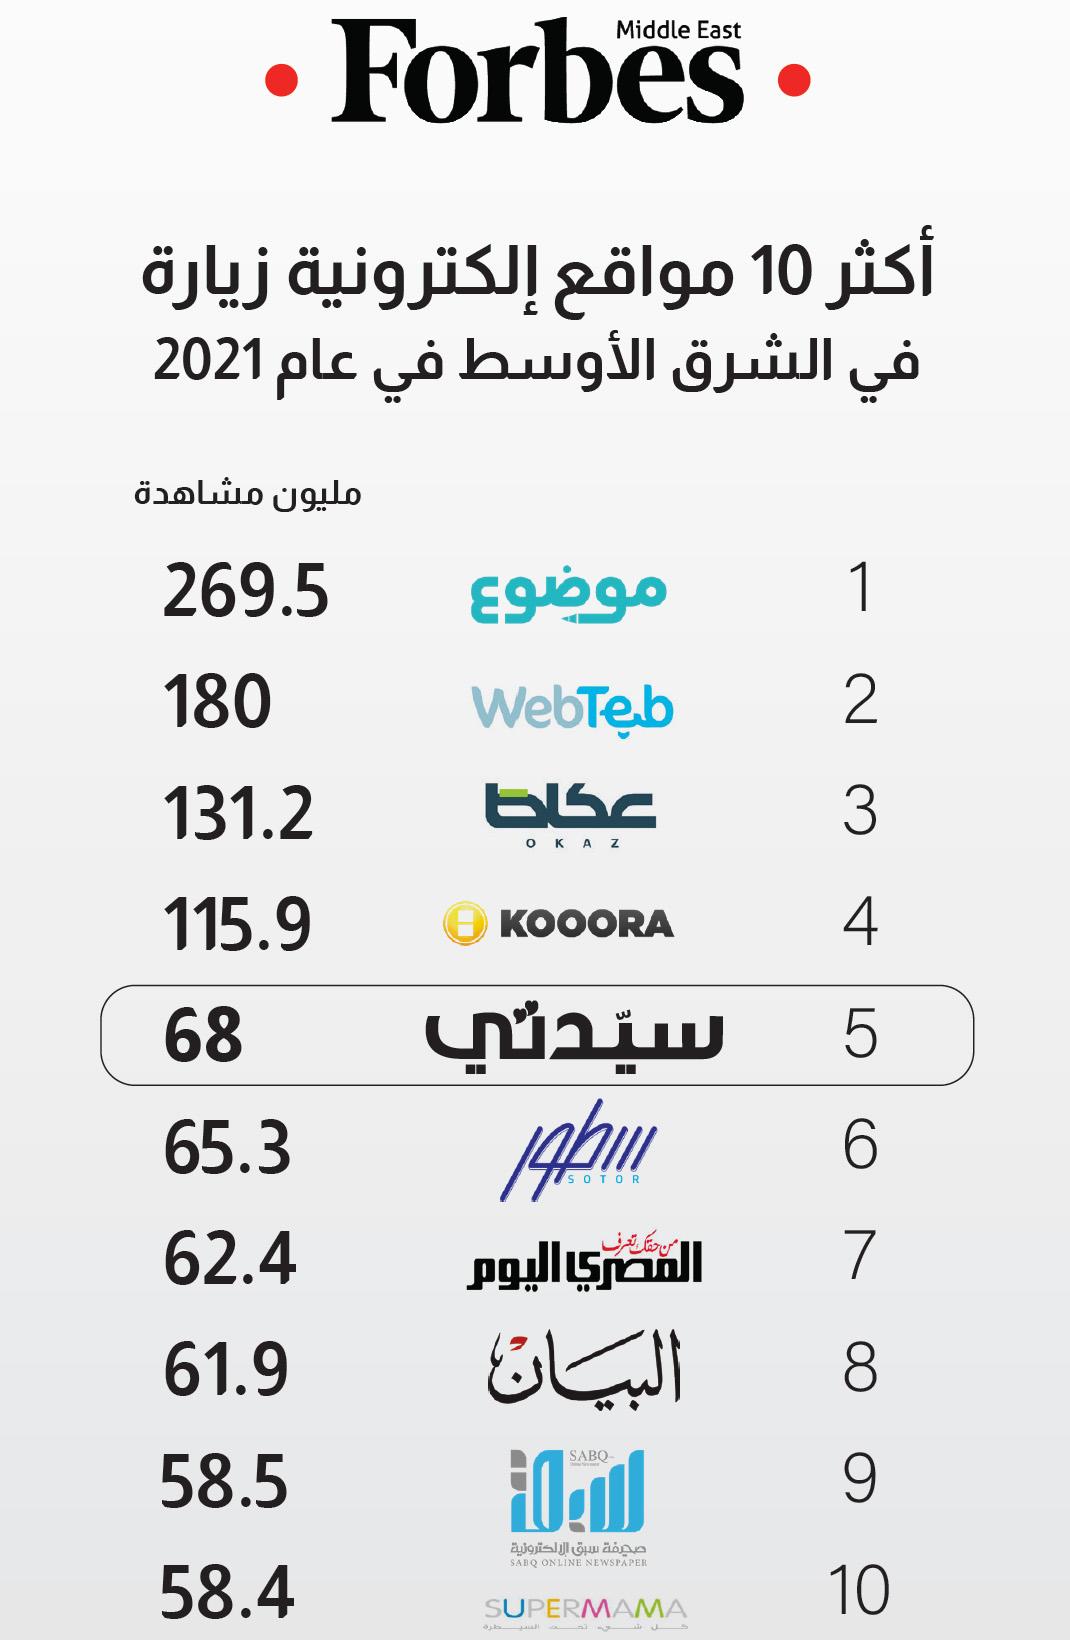 "سيدتي" في قائمة أقوى المواقع الإلكترونية في الشرق الأوسط 2021